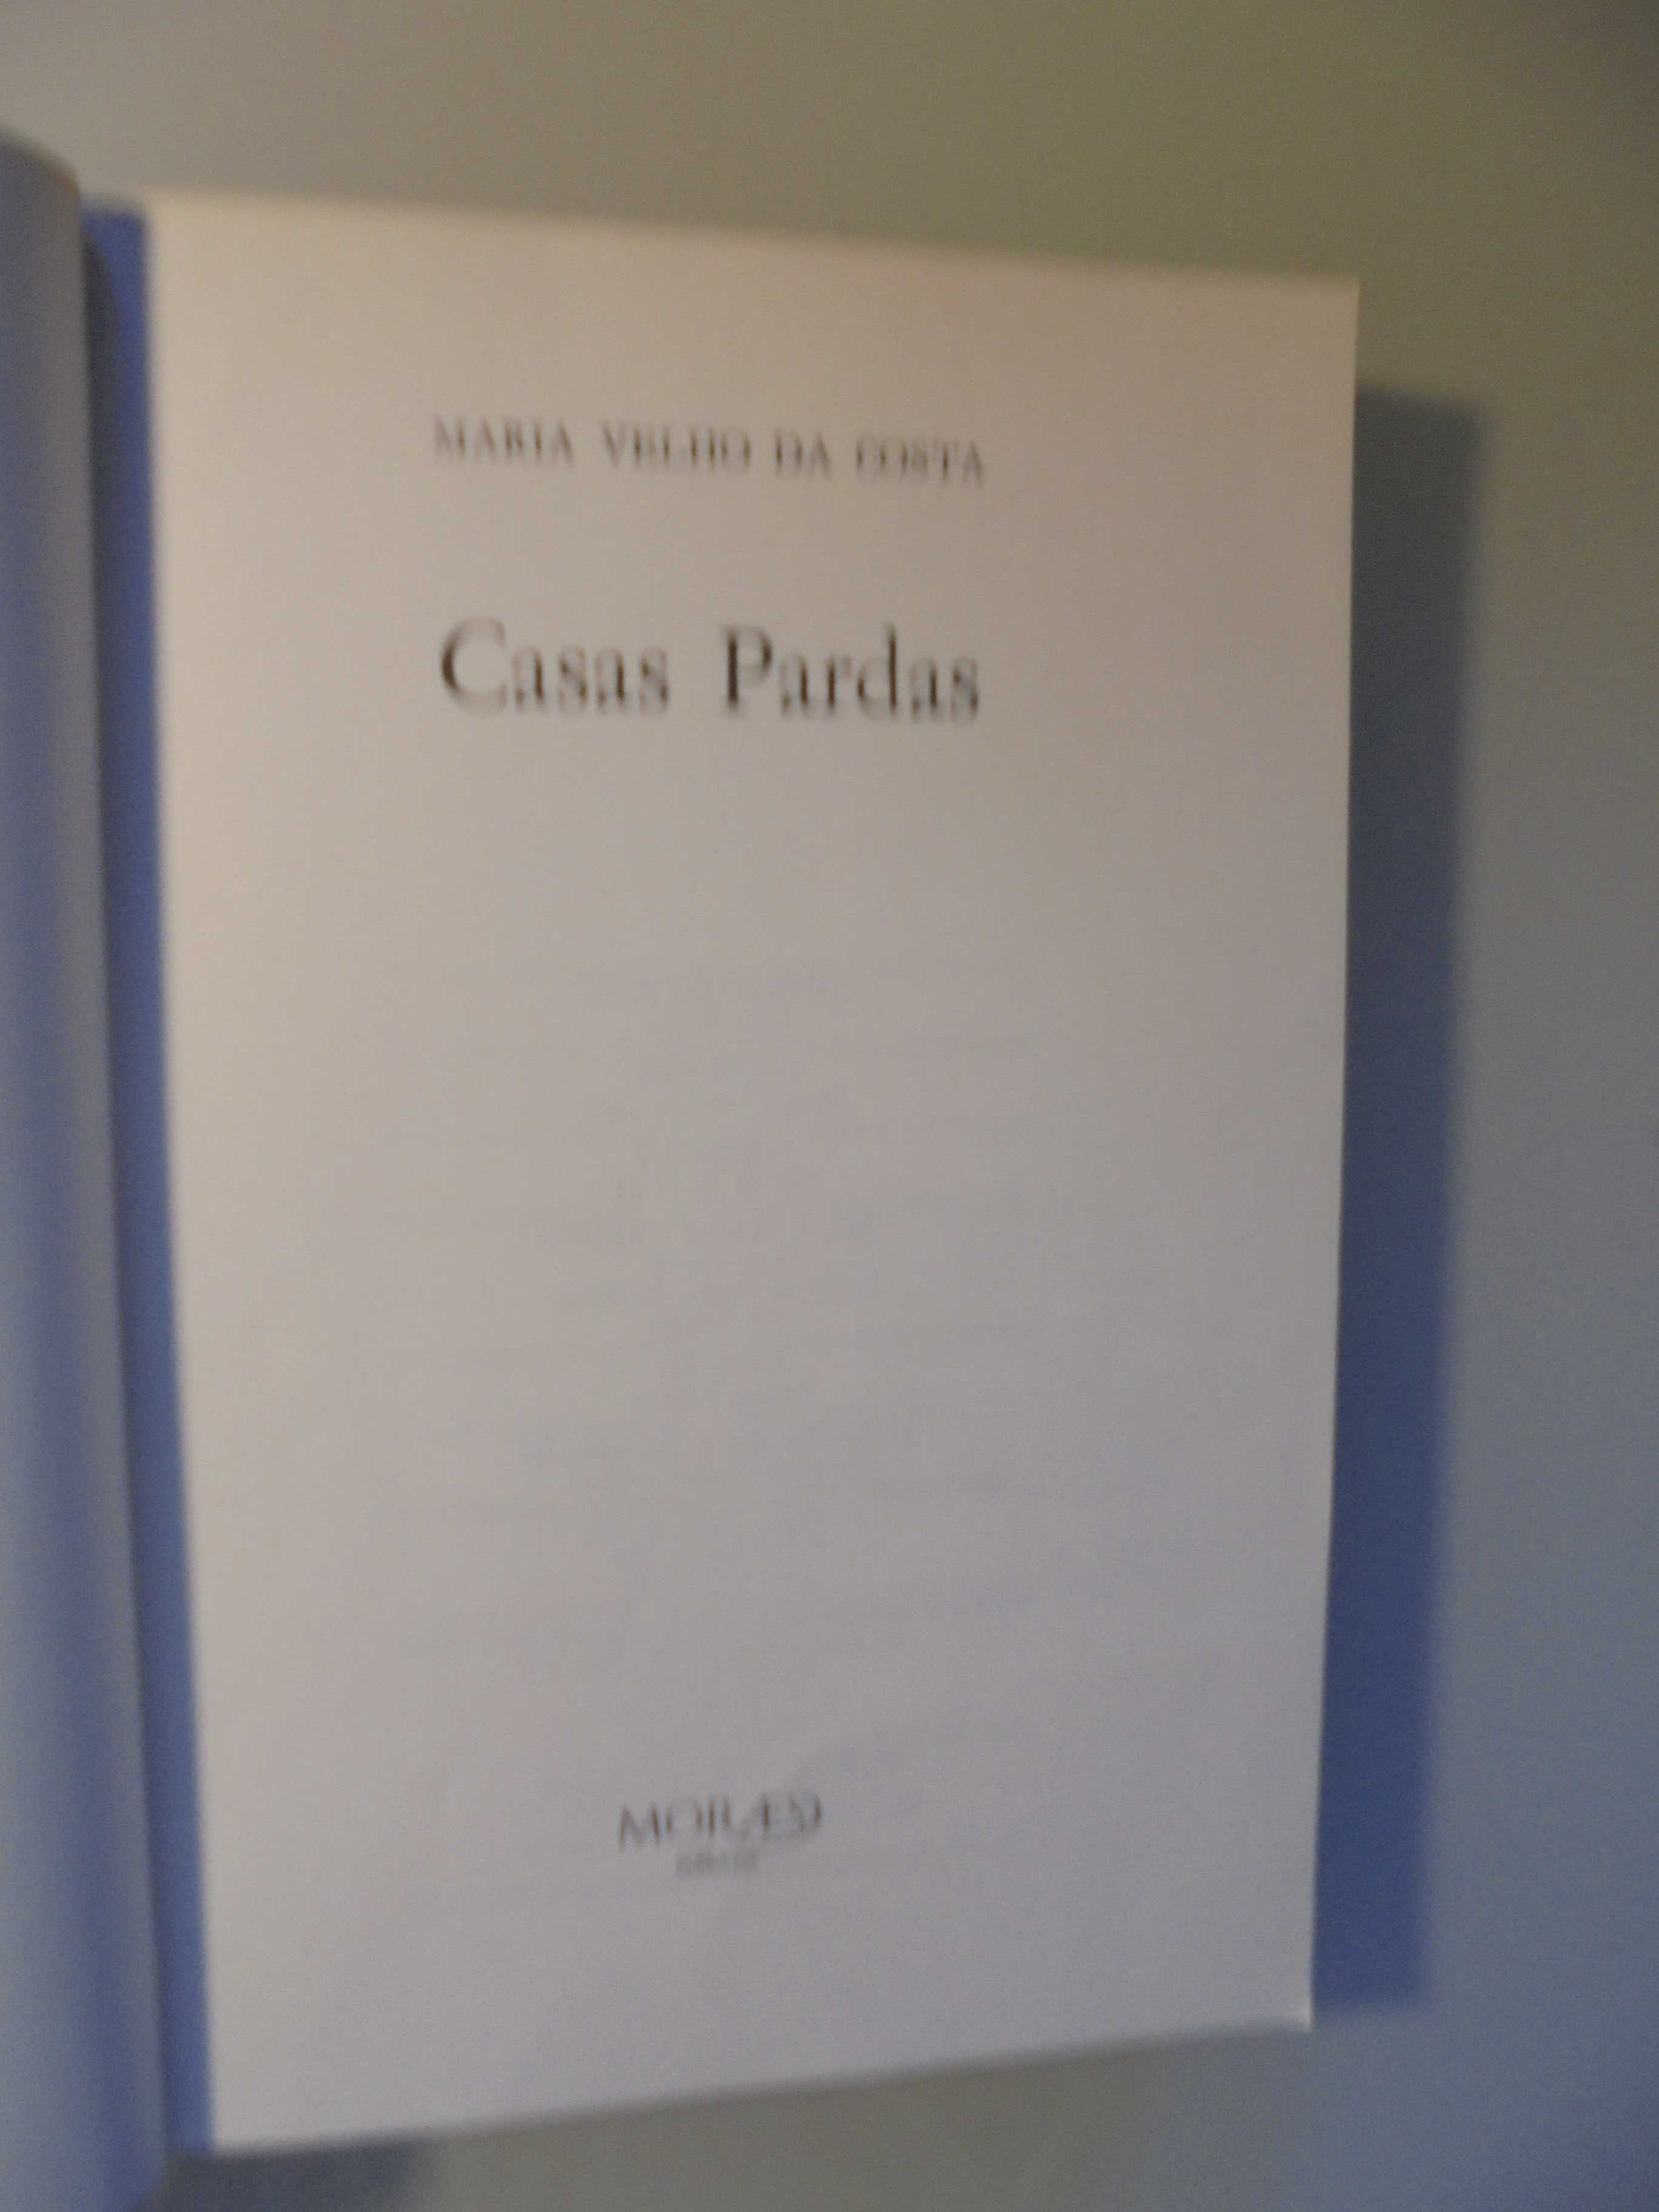 Costa (Maria Velho da);Casas Pardas;Moraes Editores,1ª Edição,1977